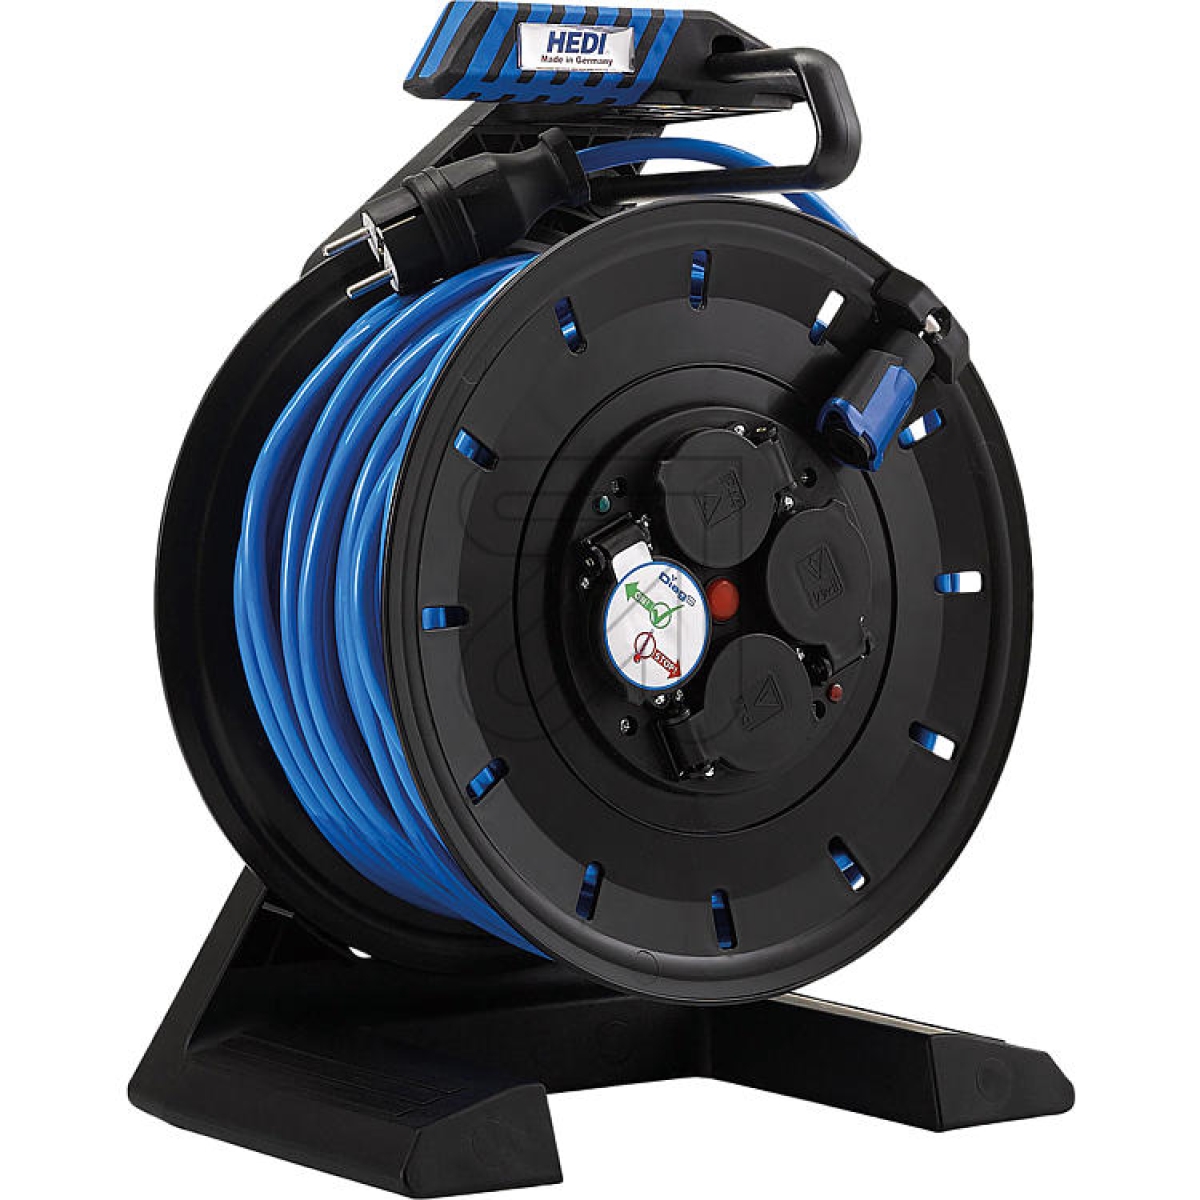 HediKabeltrommel mit Kabelbedruckung H07BQ-F3G1,5 40m blauArtikel-Nr: 998600